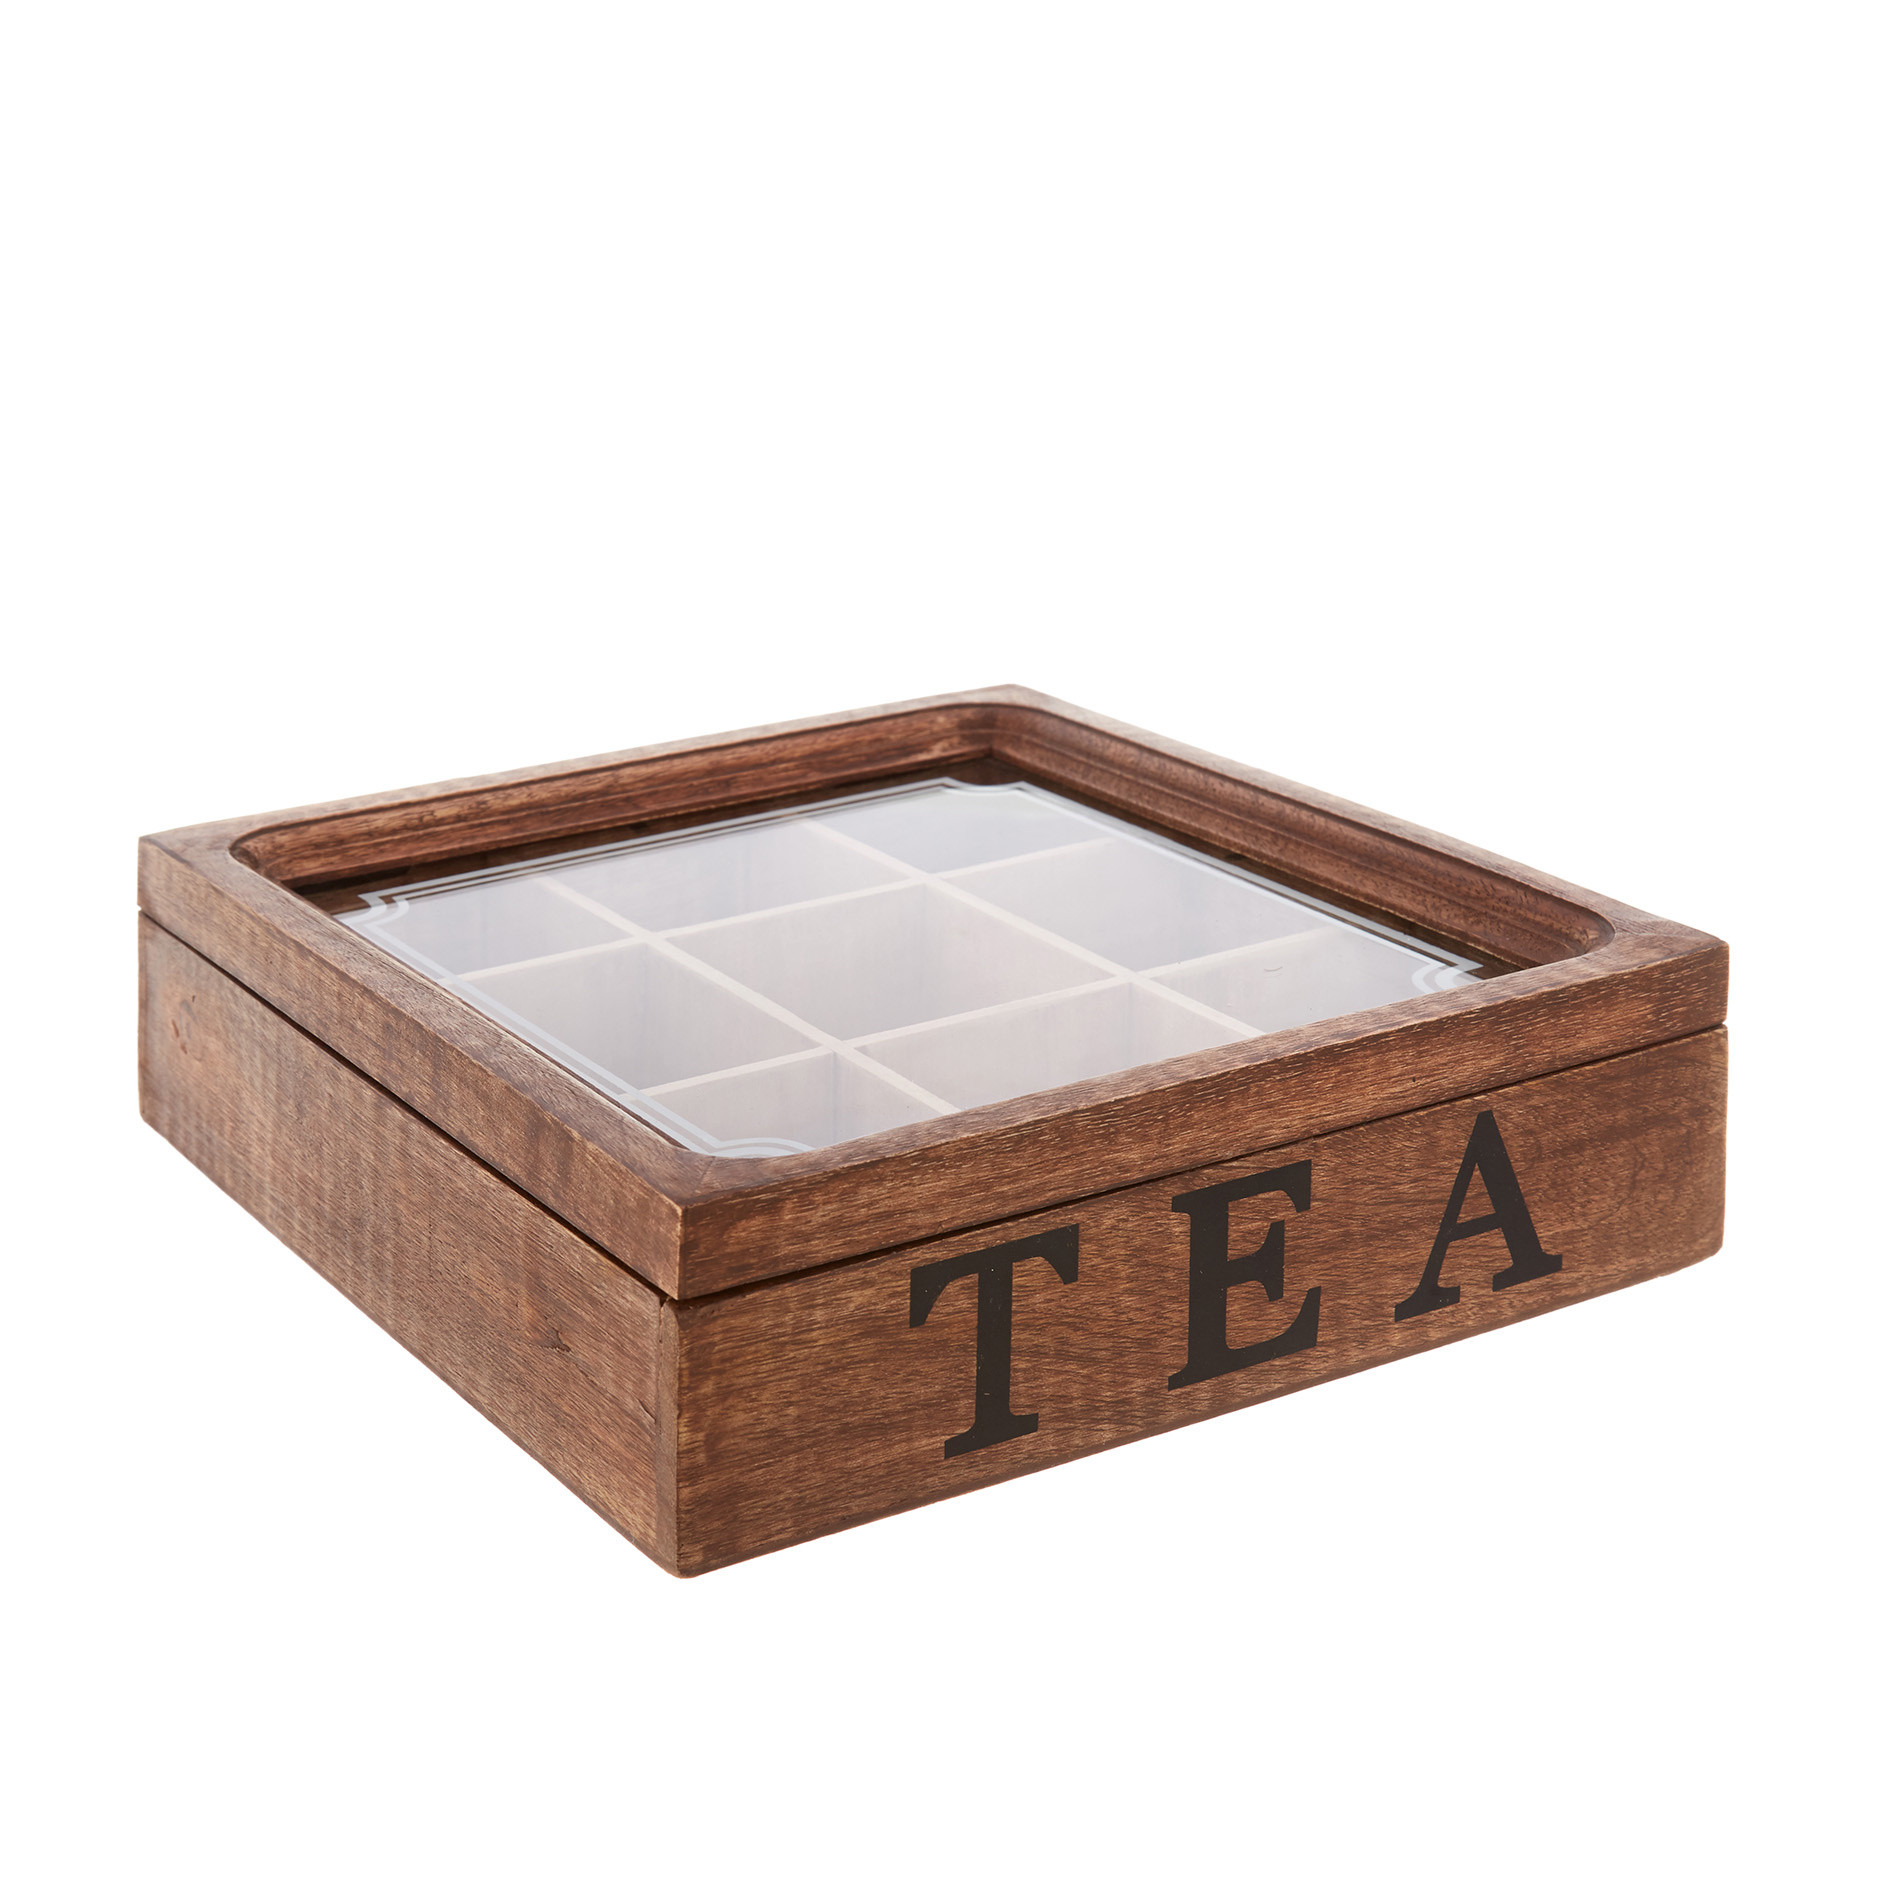 Tea box in legno, Marrone, large